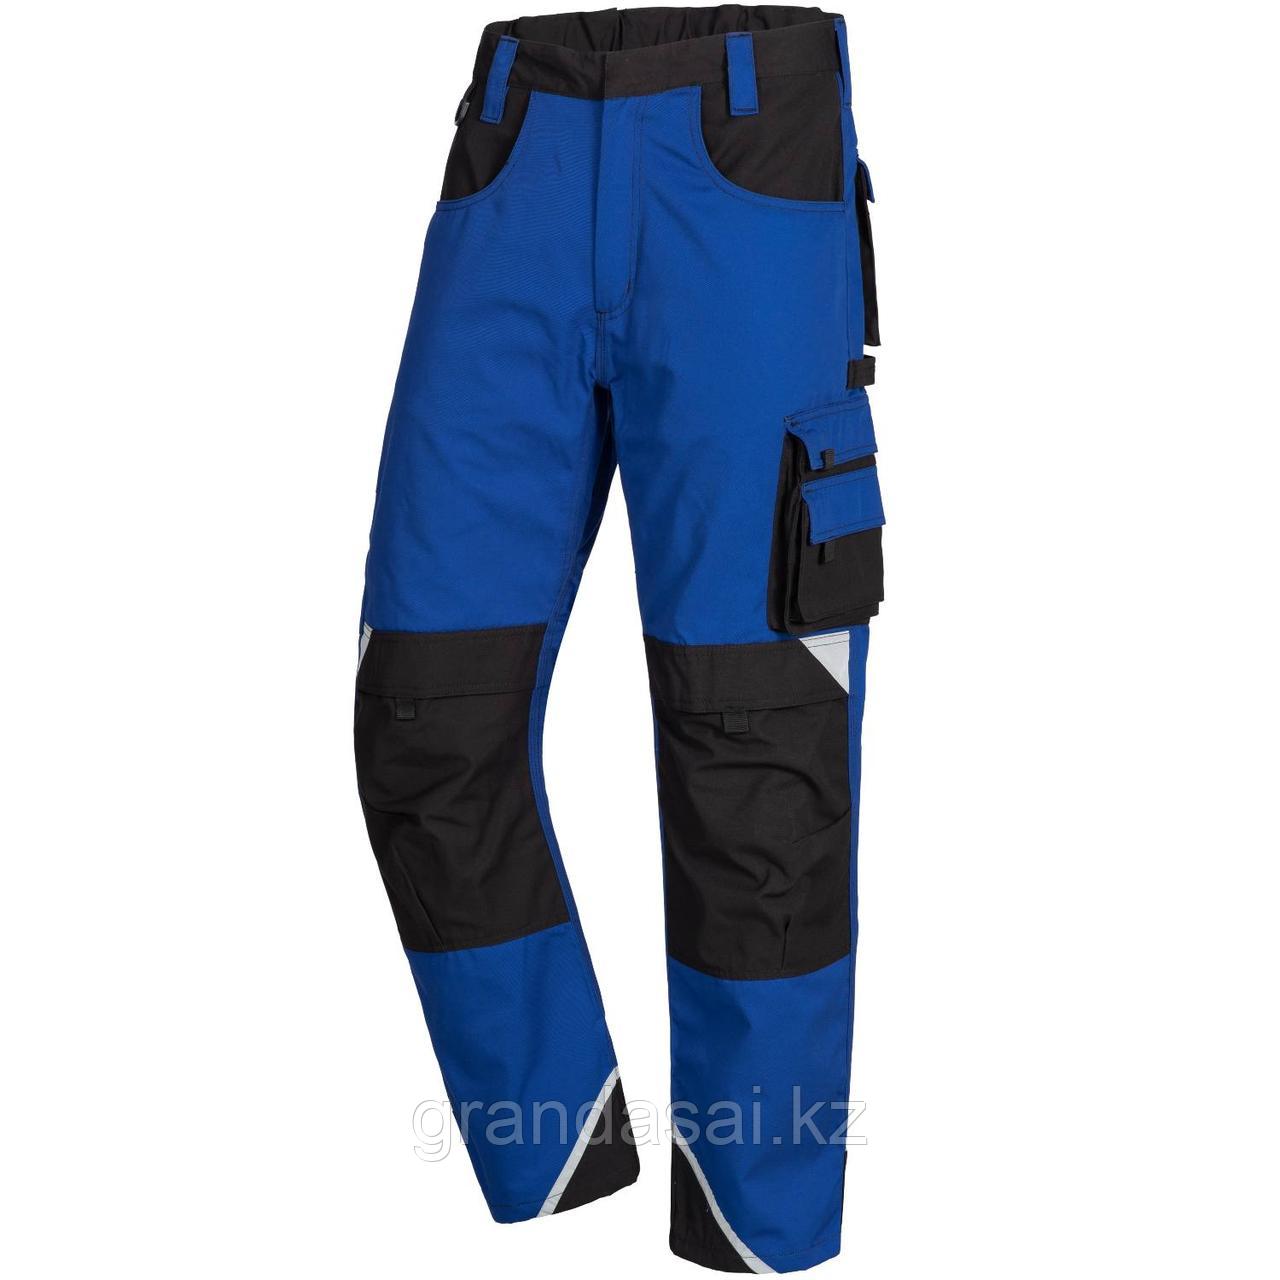 NITRAS 7611, рабочие брюки, цвет синий/черный